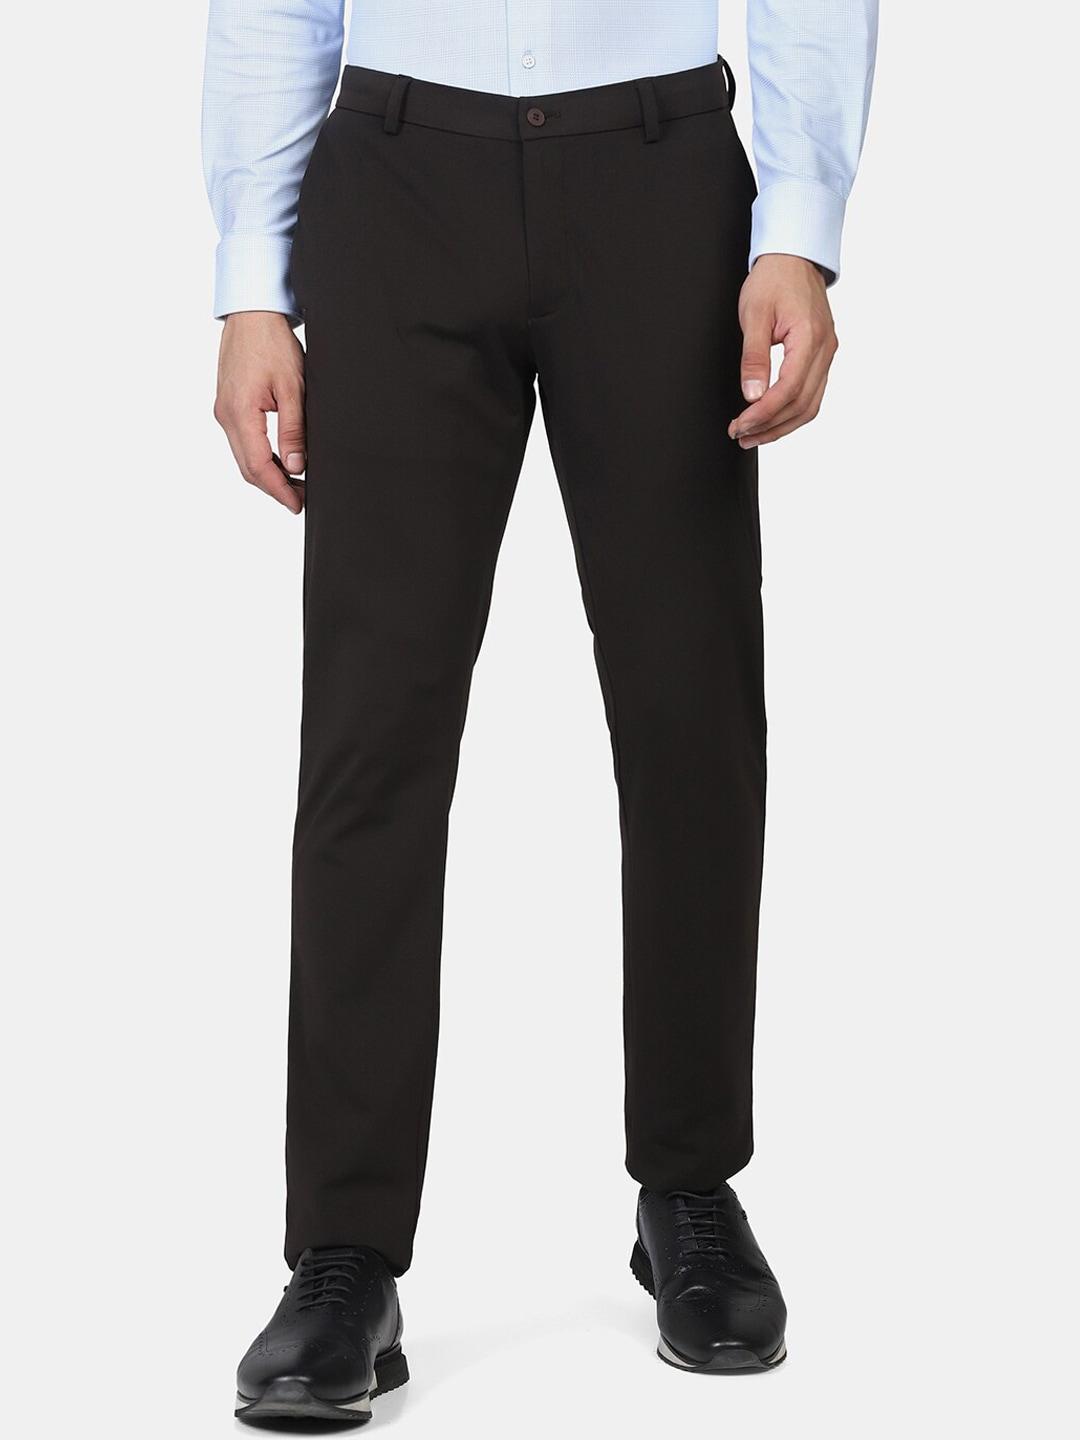 blackberrys-men-brown-skinny-fit-cotton-trousers